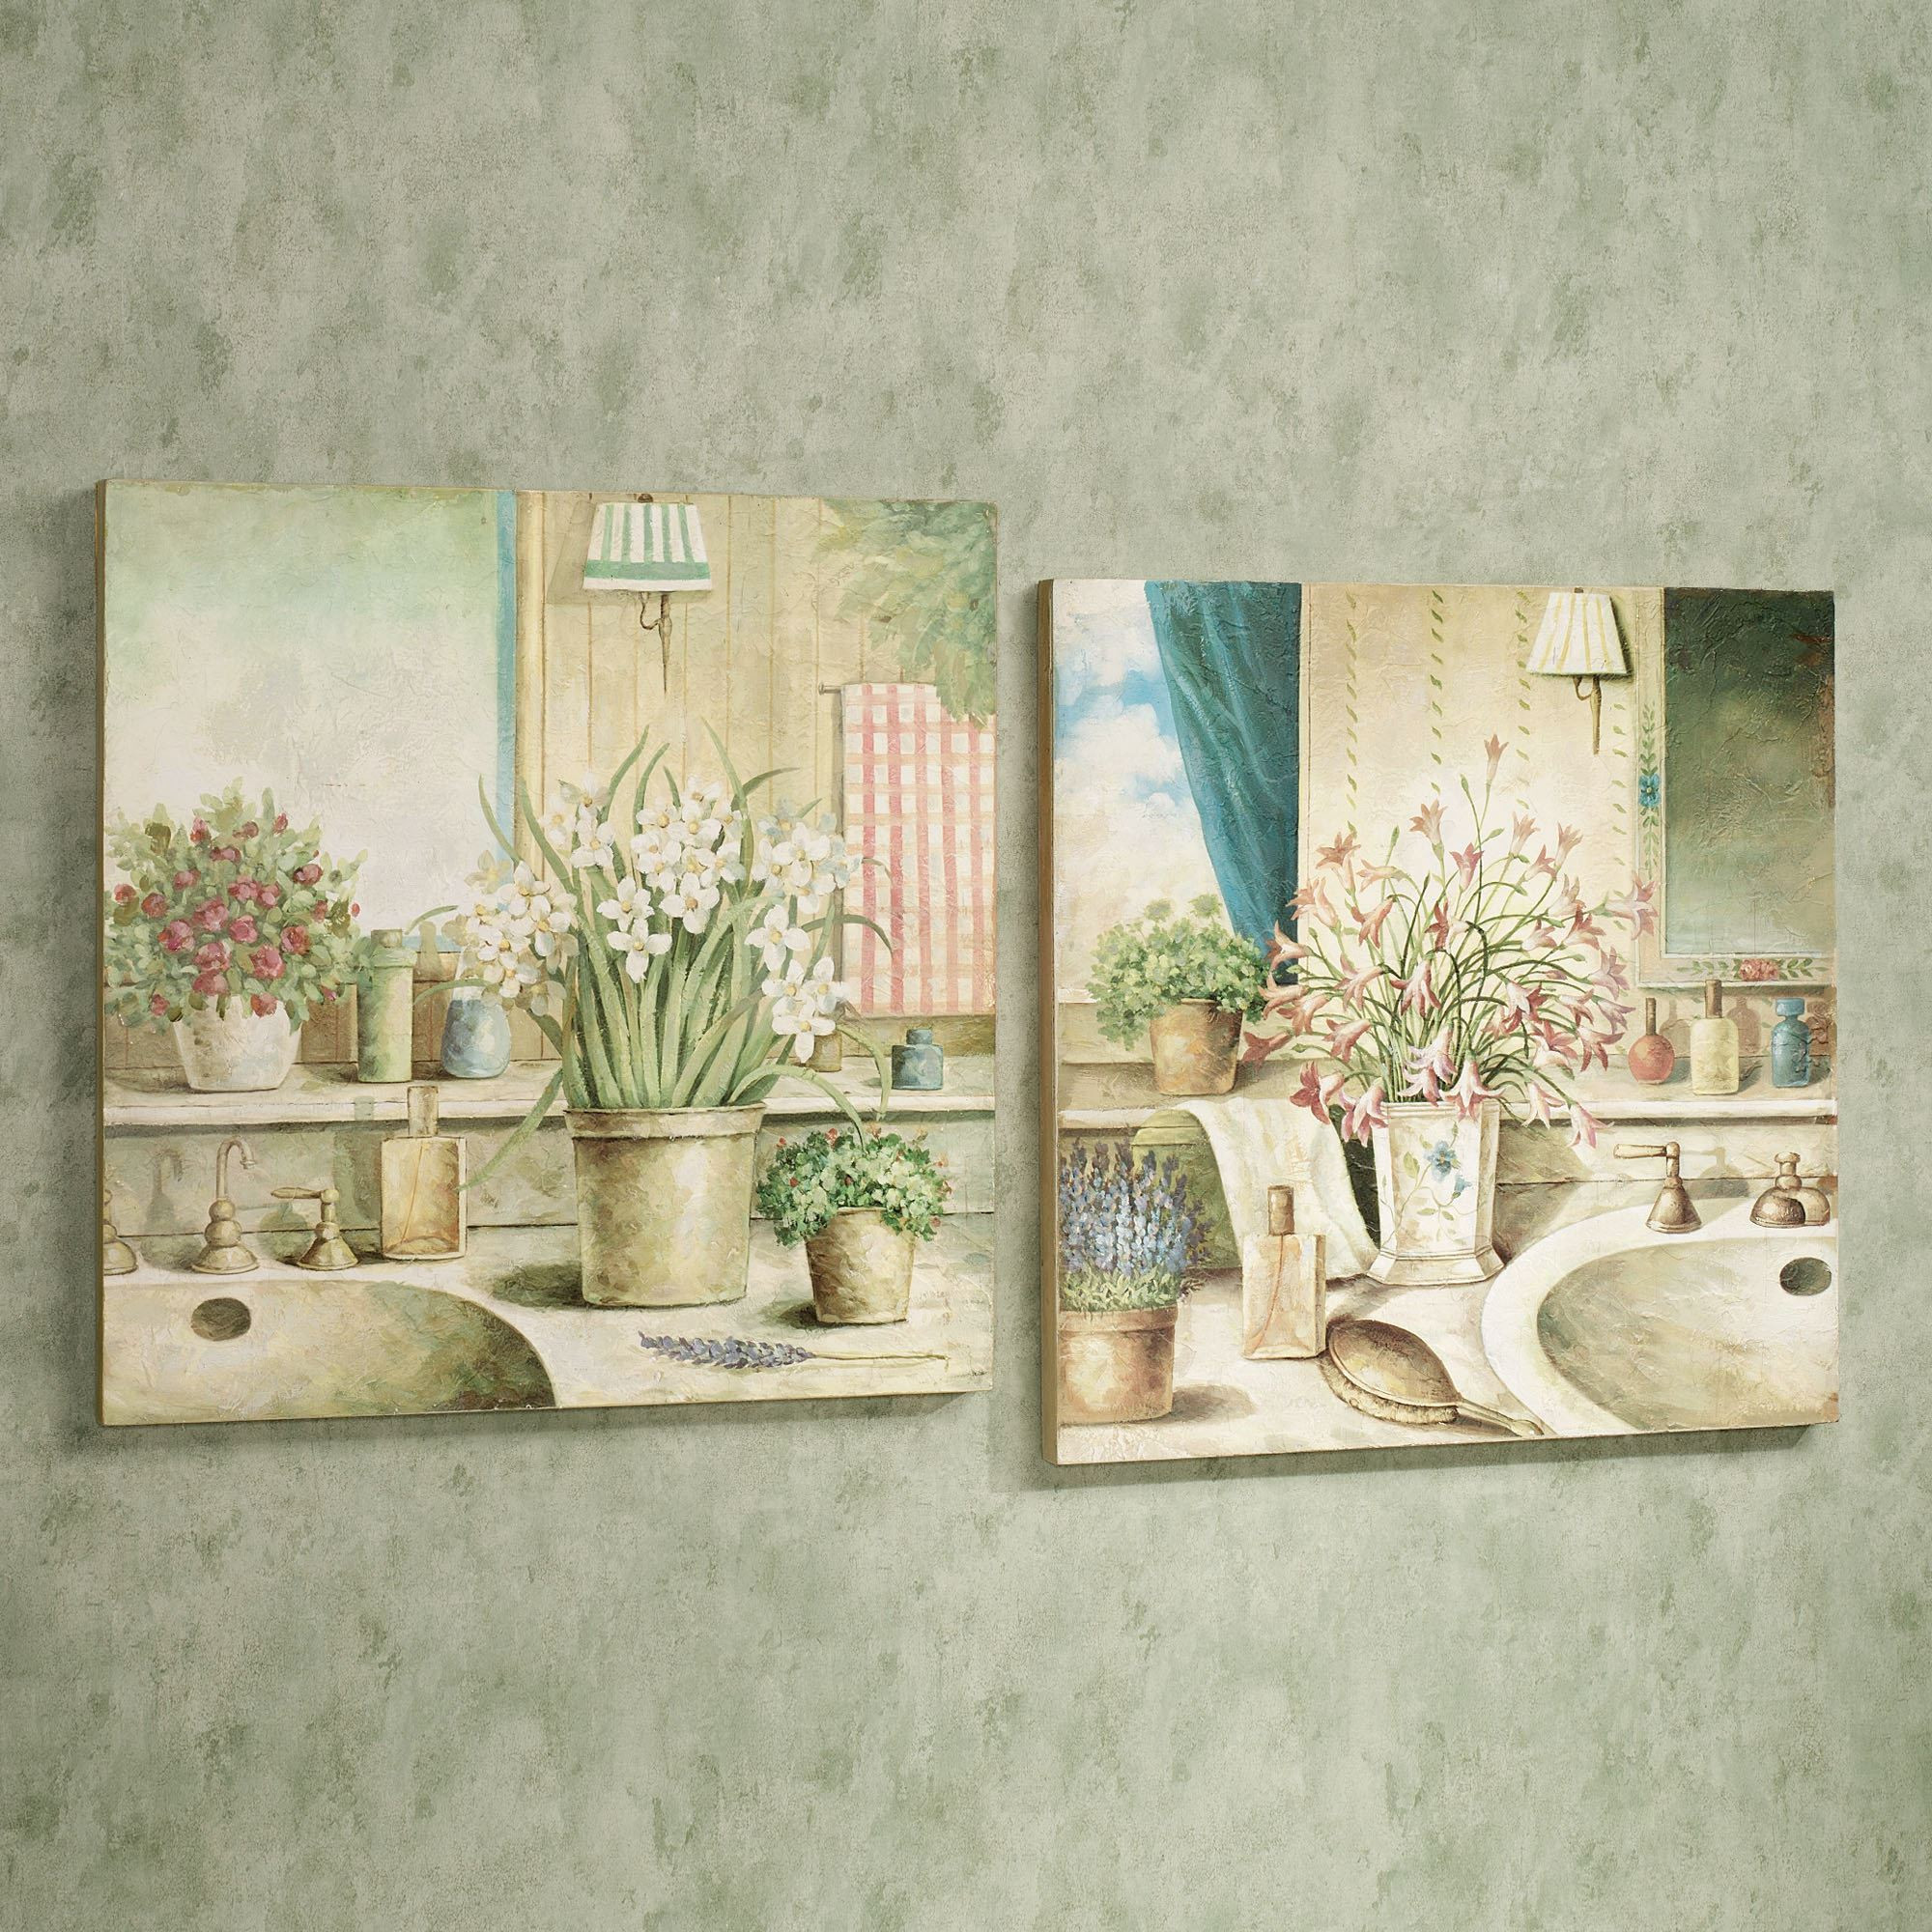 Bathroom Wall Plaques
 Vanities in Bloom Wooden Wall Art Plaque Set